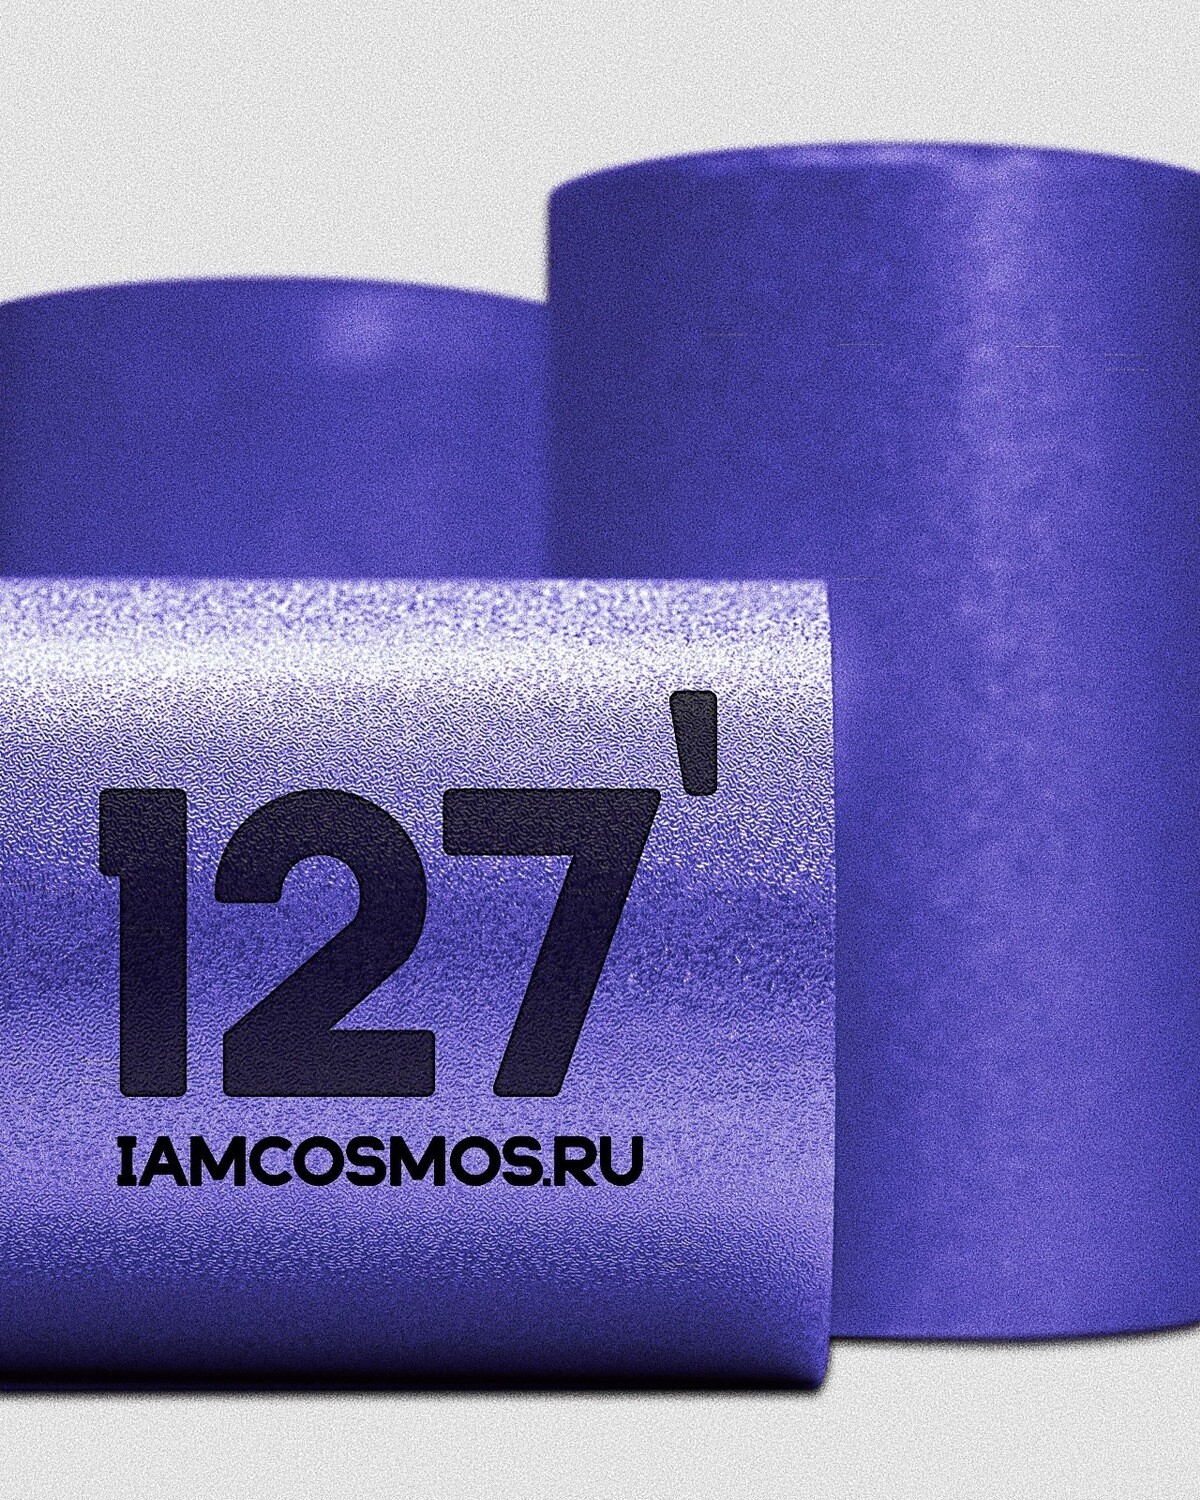 ЦУНАМИ 127’ - синяя фольга с тиснением, 1200 метров.